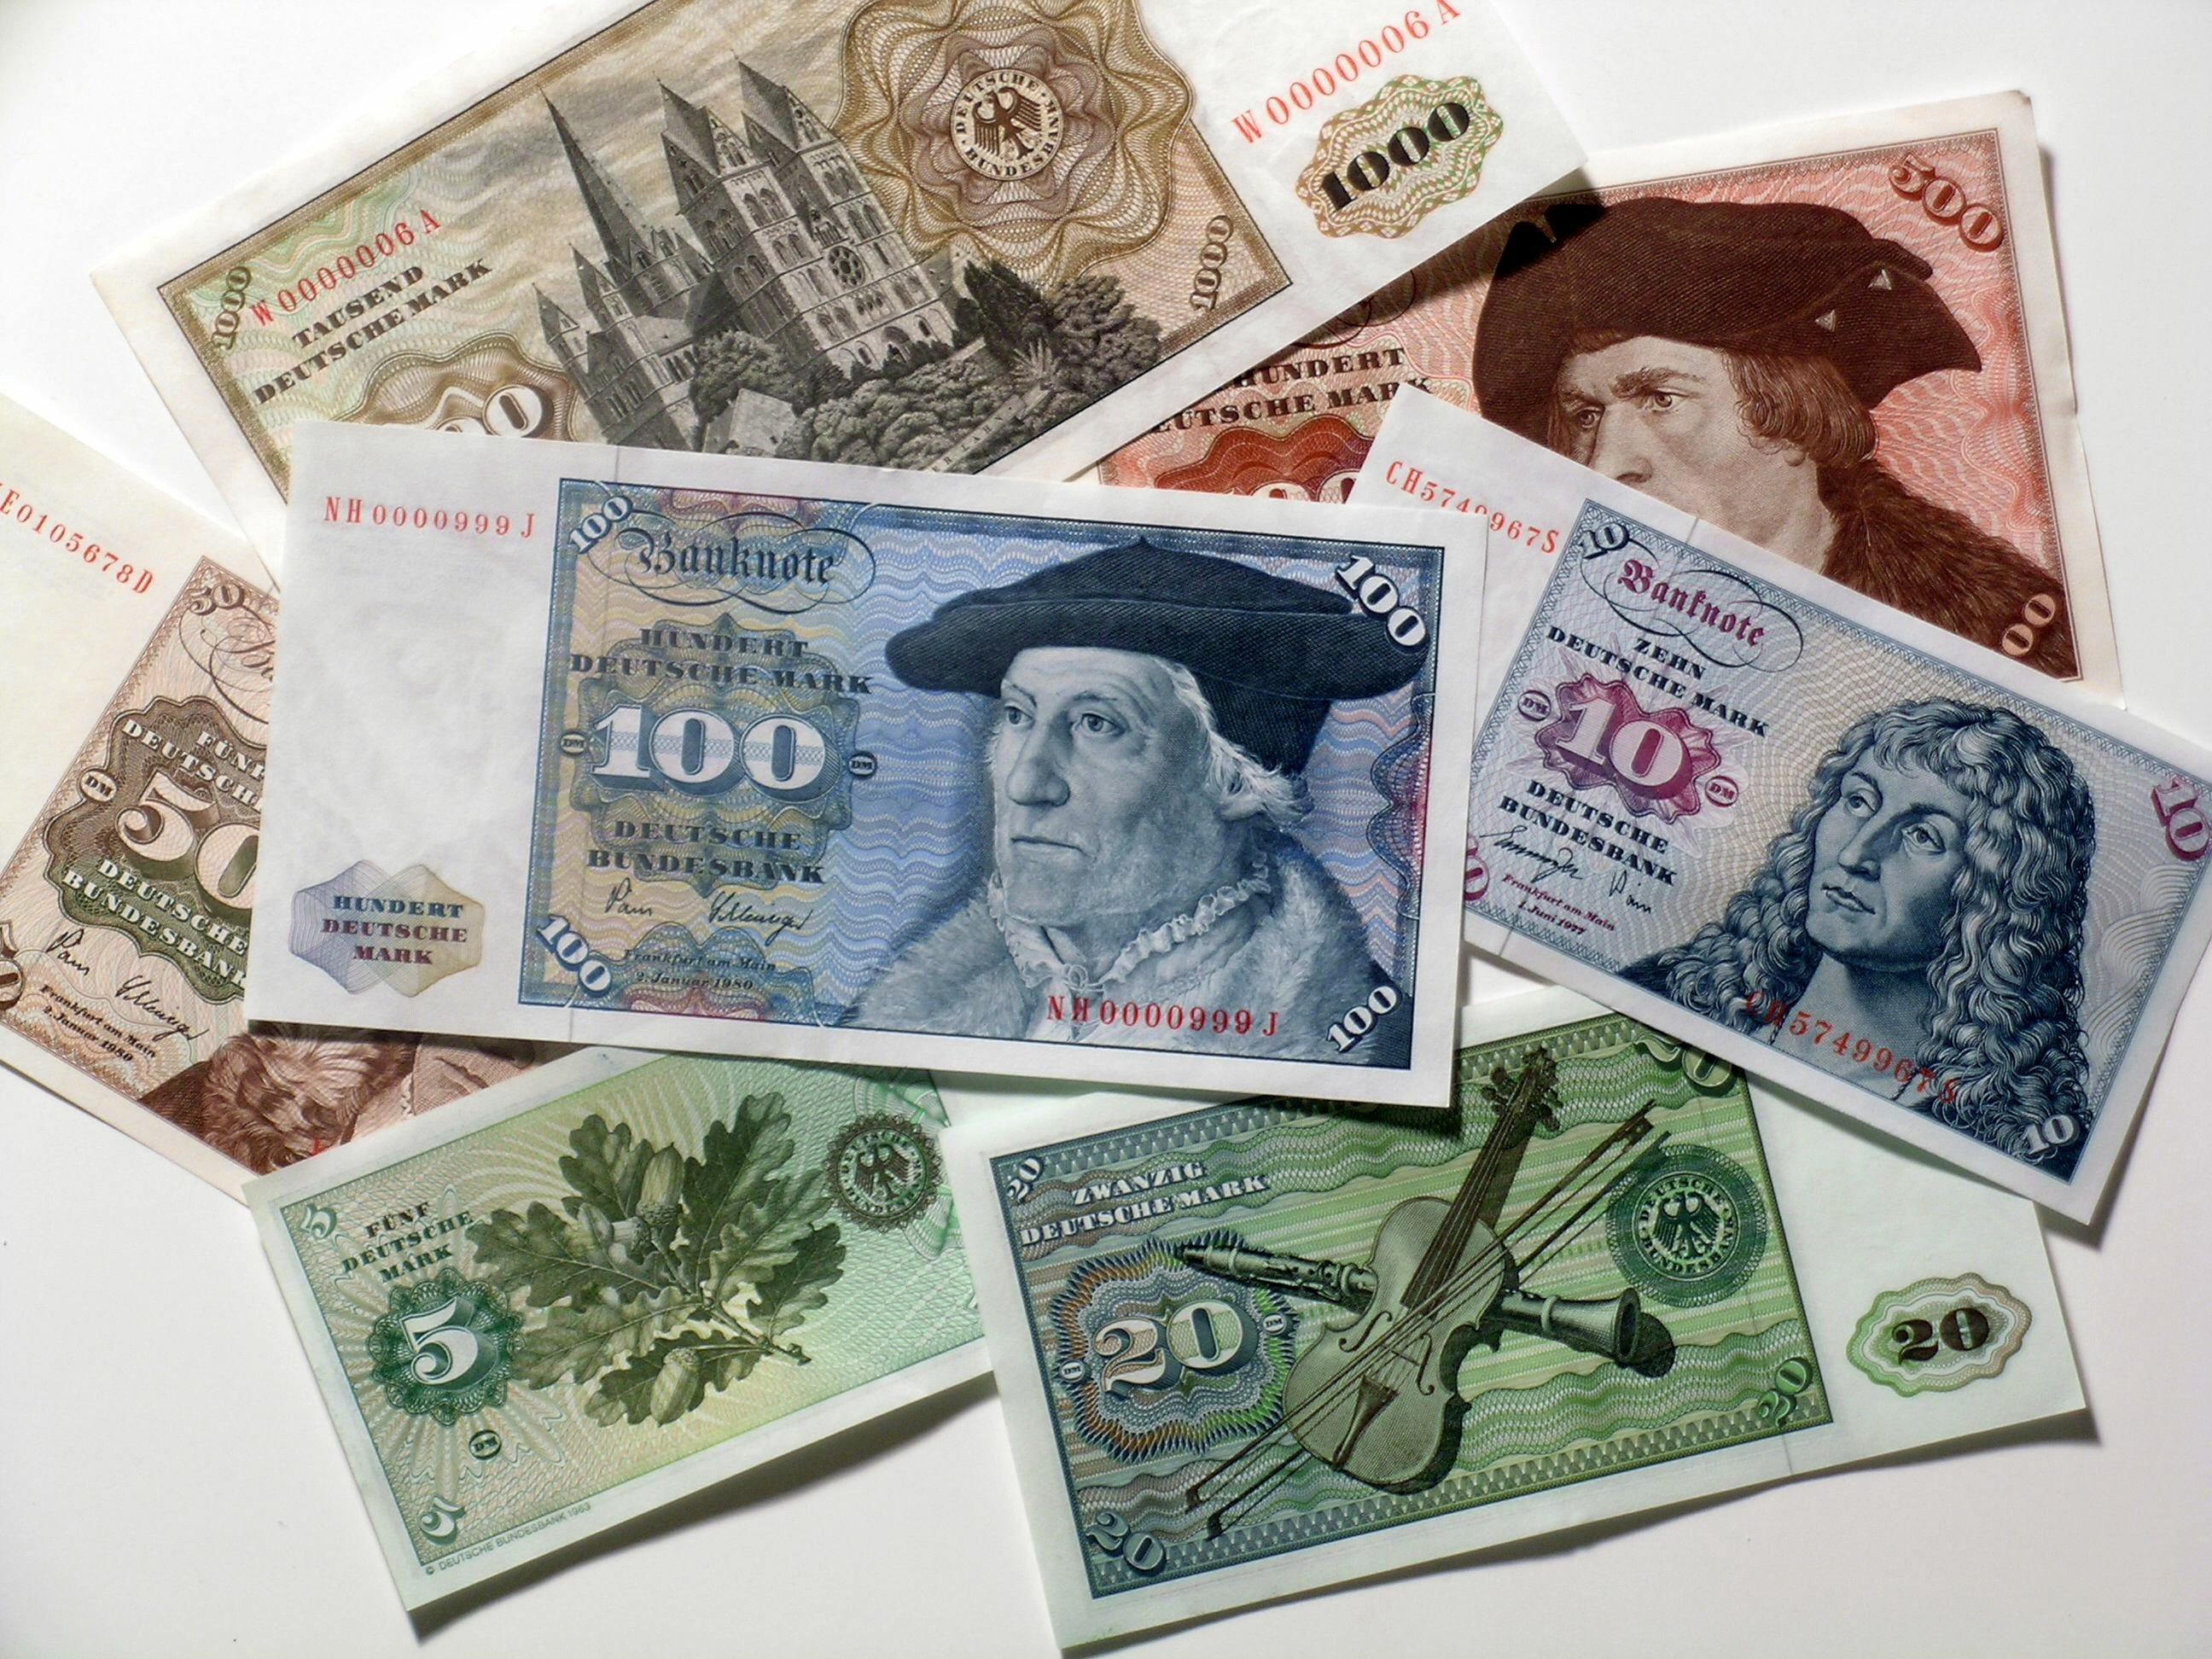 Deutsche mark. Валюта Германии до евро. Марка (денежная единица Германии). Немецкие марки валюта. Немецкие марки купюры.